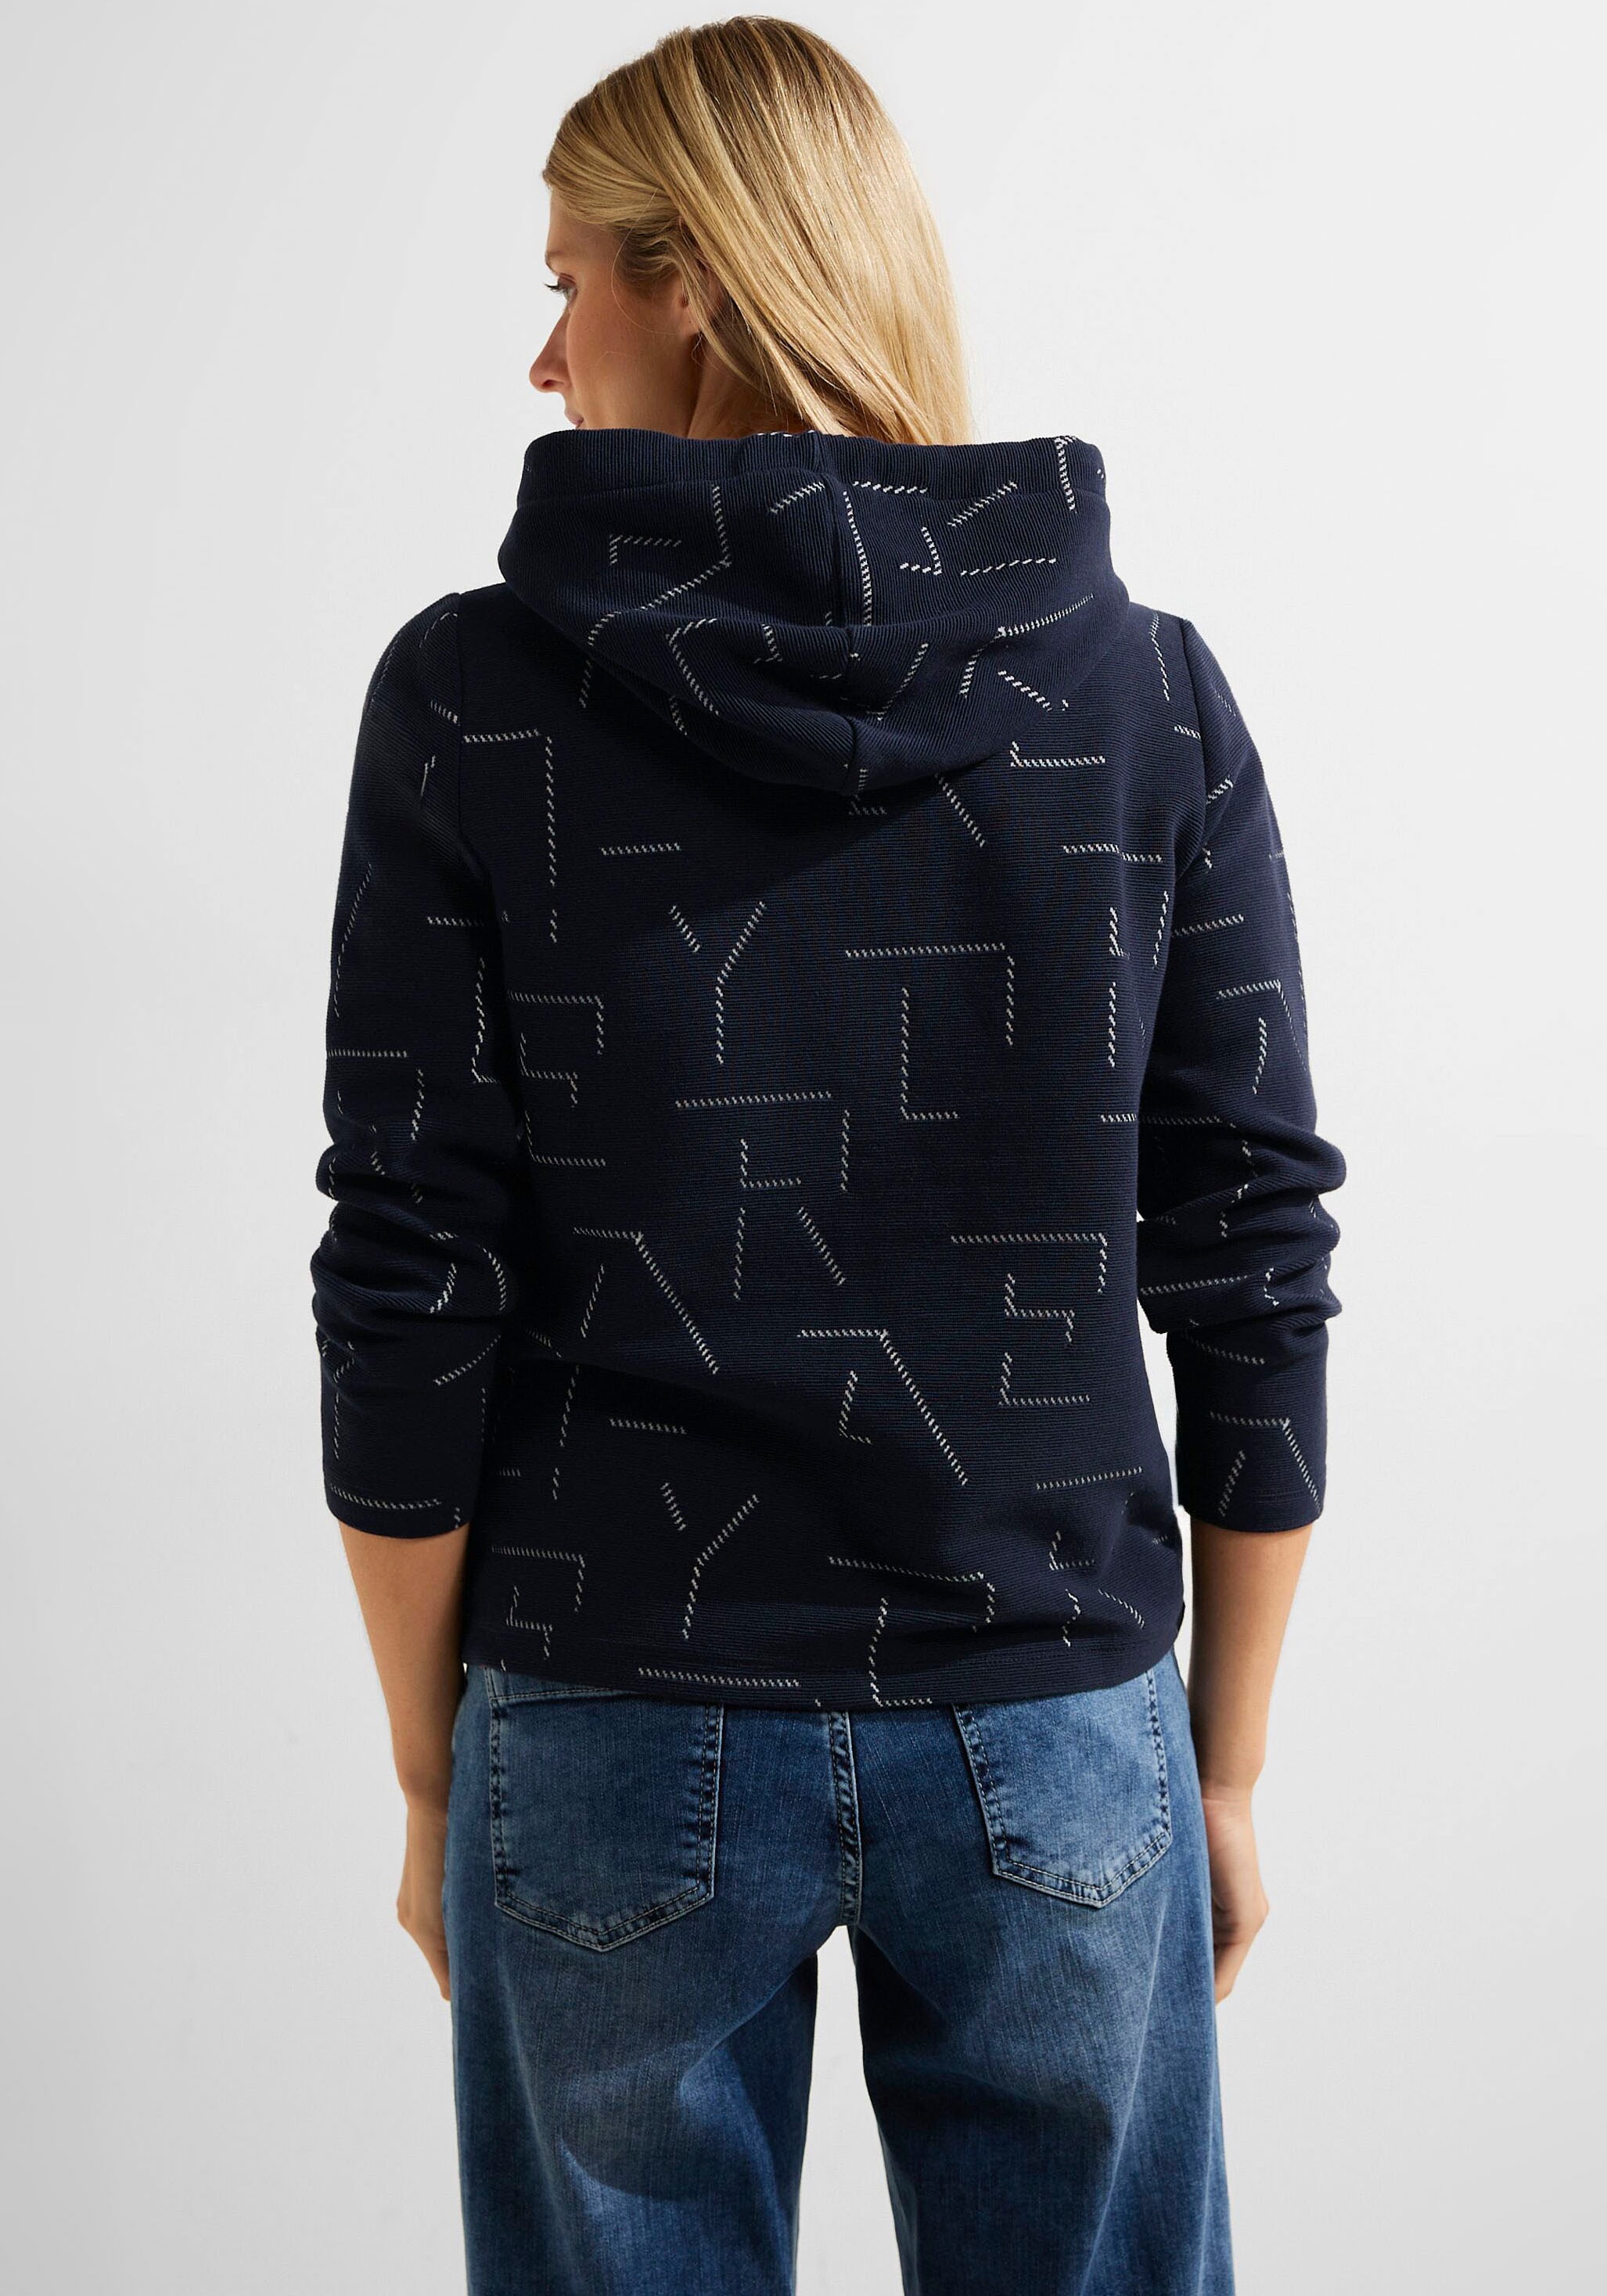 Jacquard-Muster mit einzigartigem Cecil Sweatshirt, kaufen